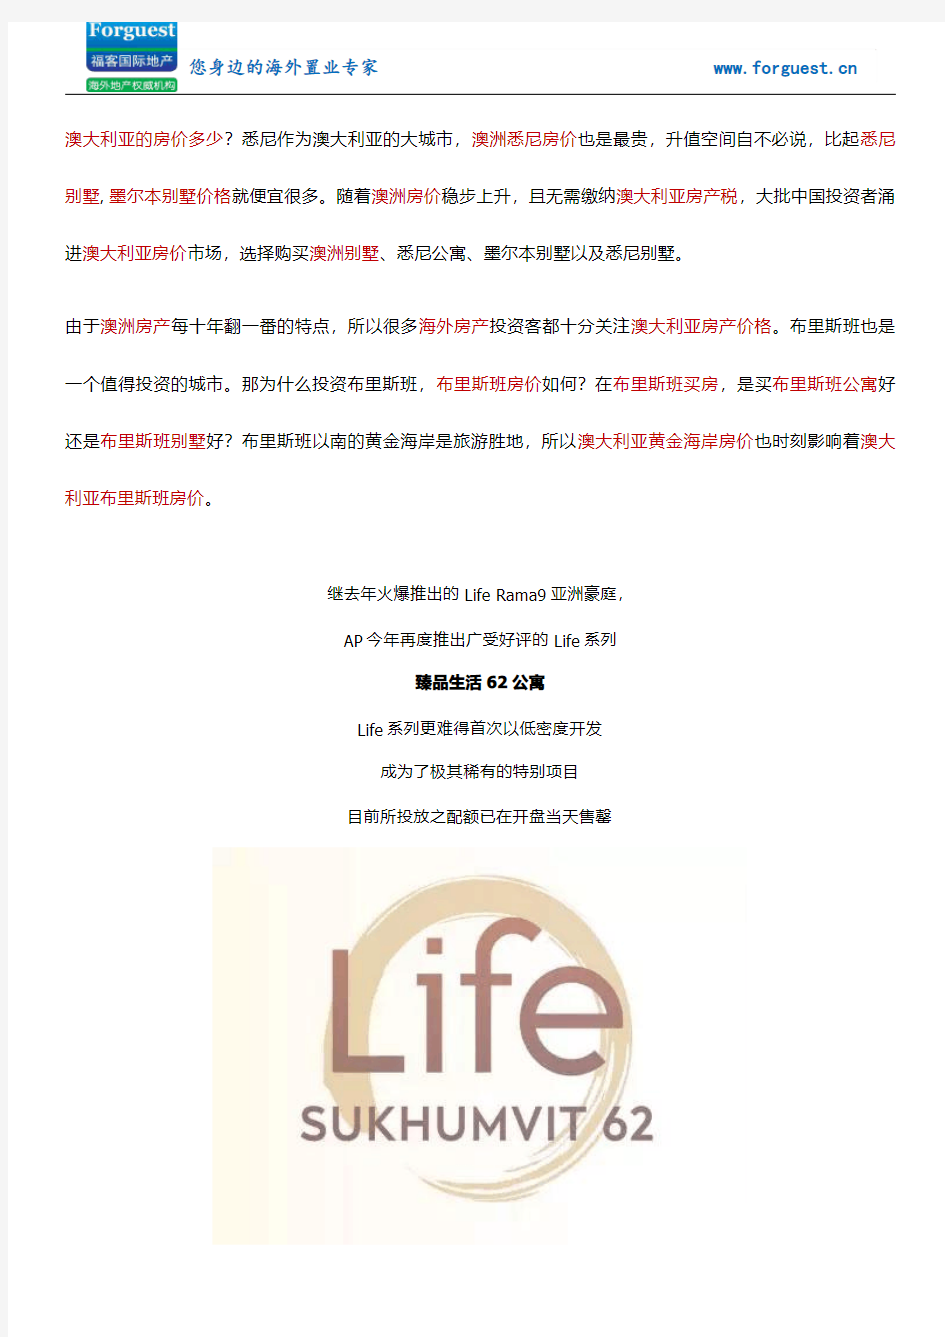 【福客海外房产】曼谷【Life Sukhumvit 62】(臻品生活62公寓)